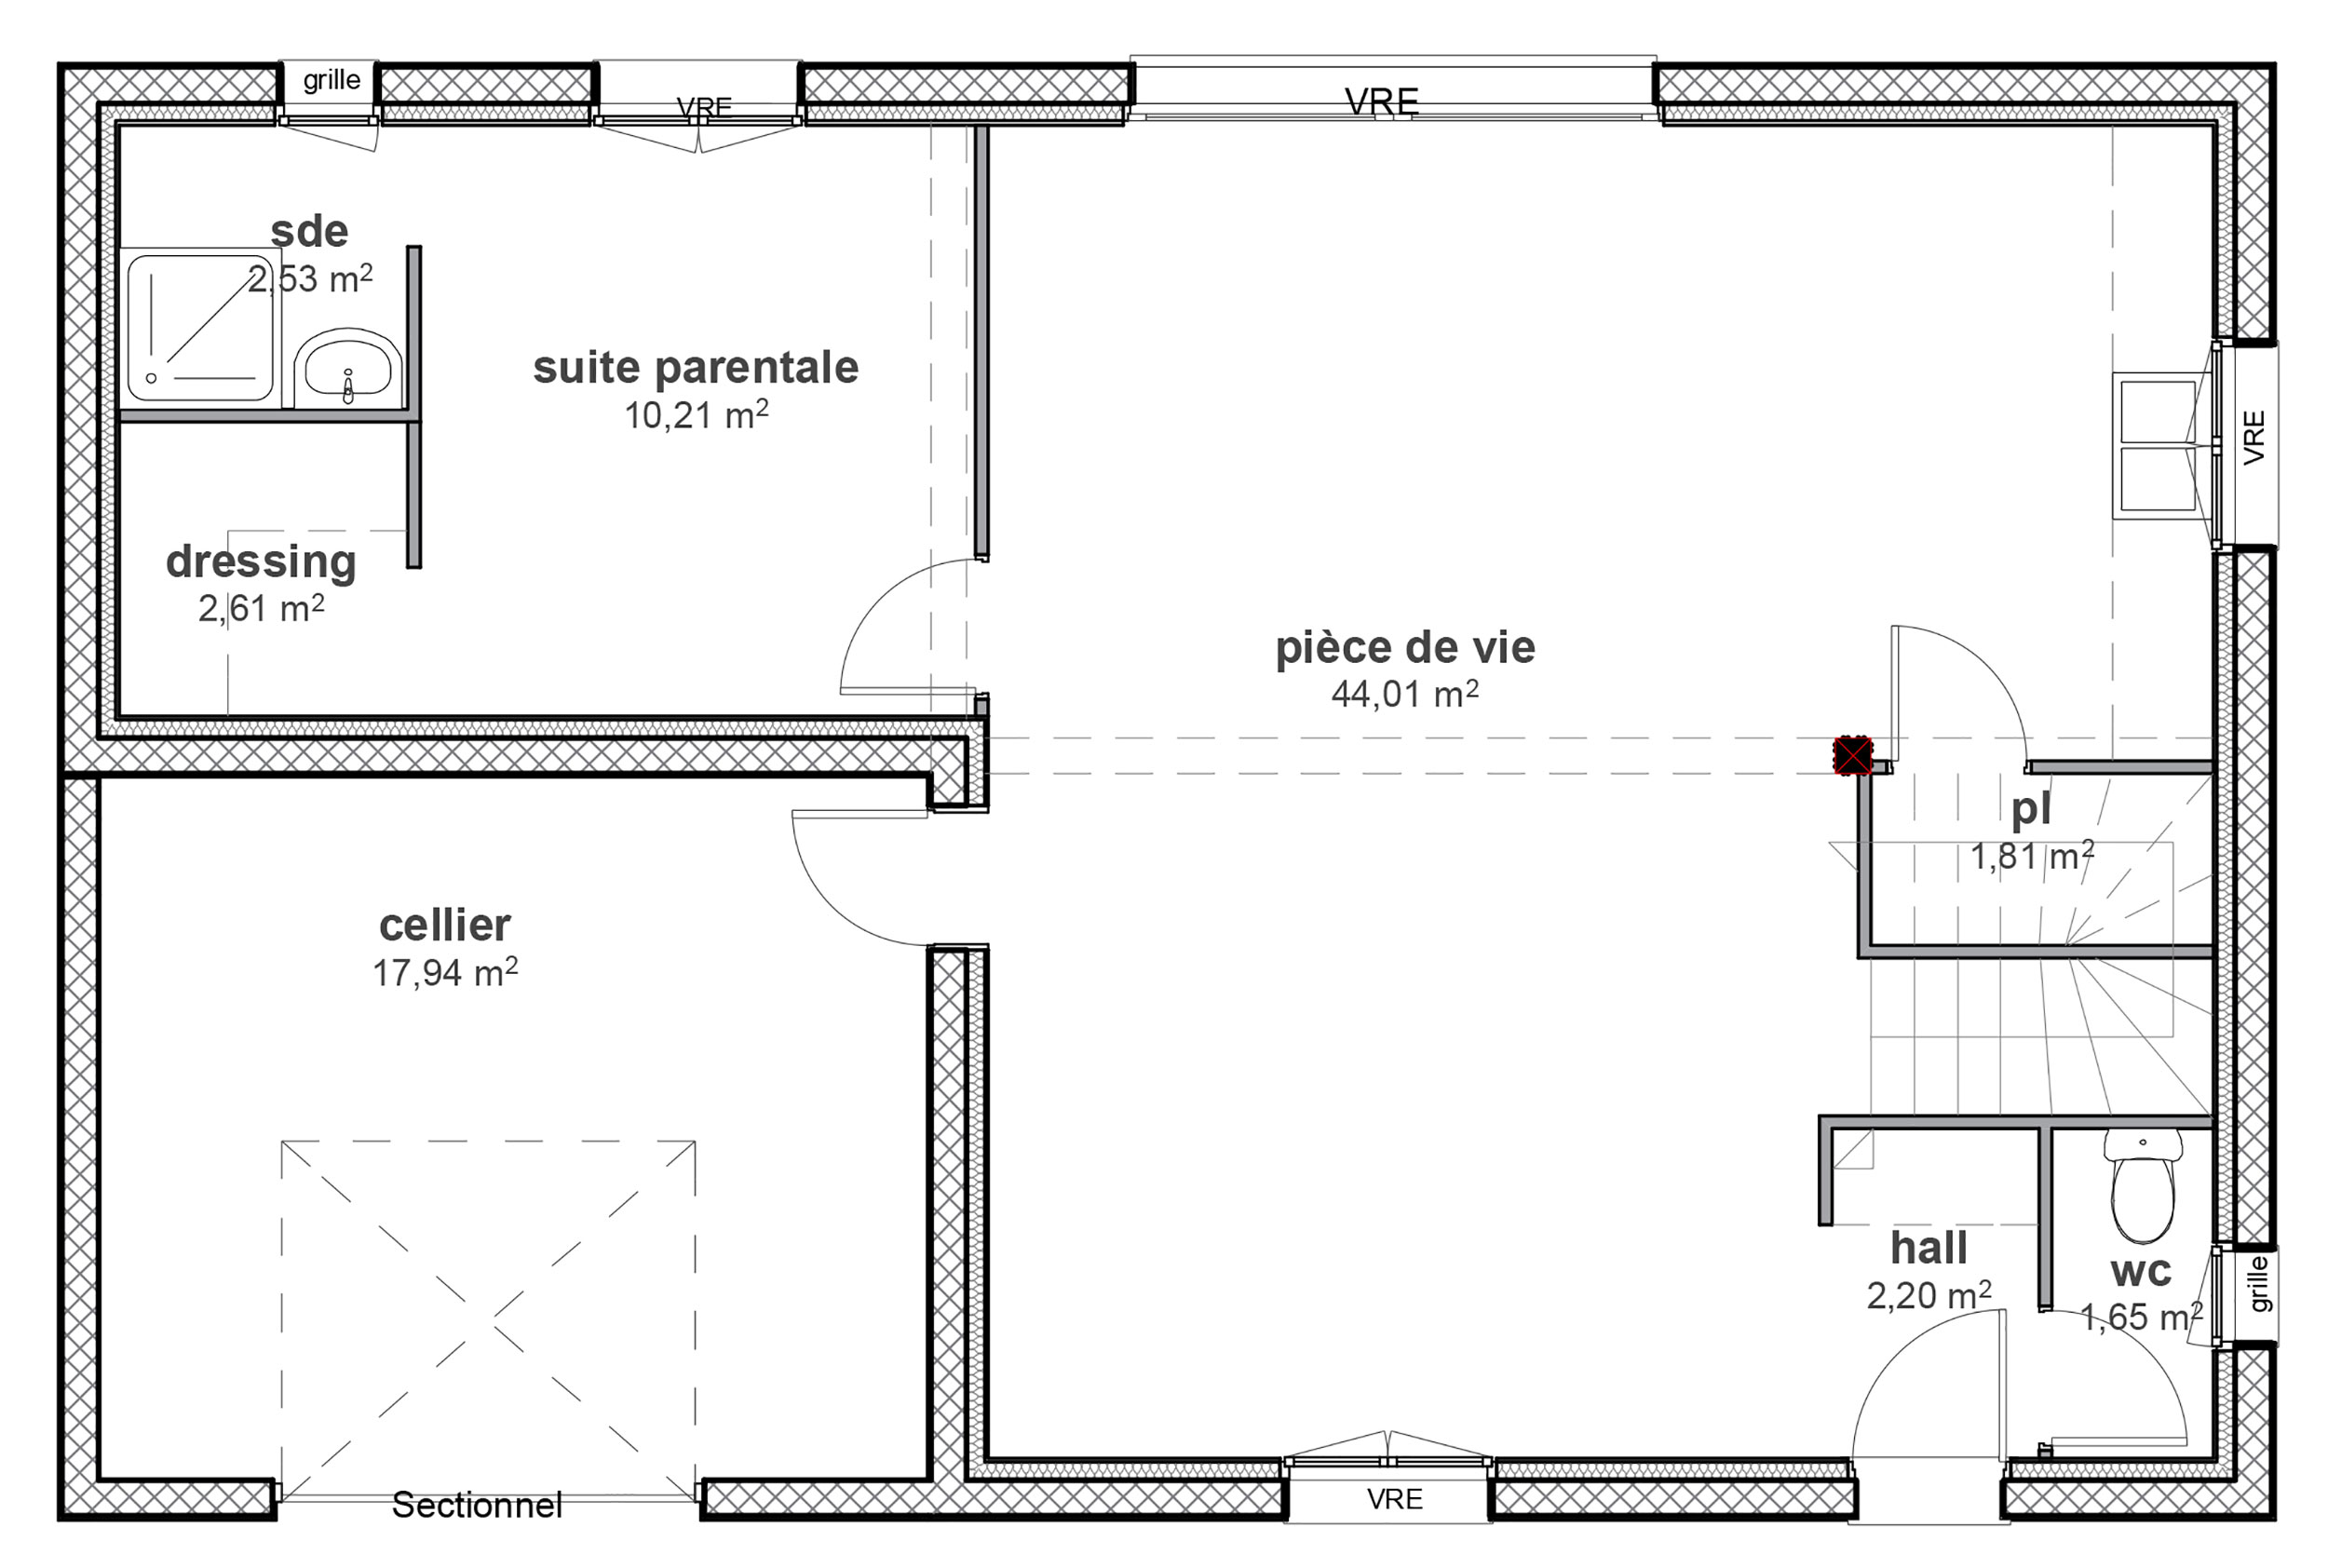 Plan de maison : Une maison simple et confortable